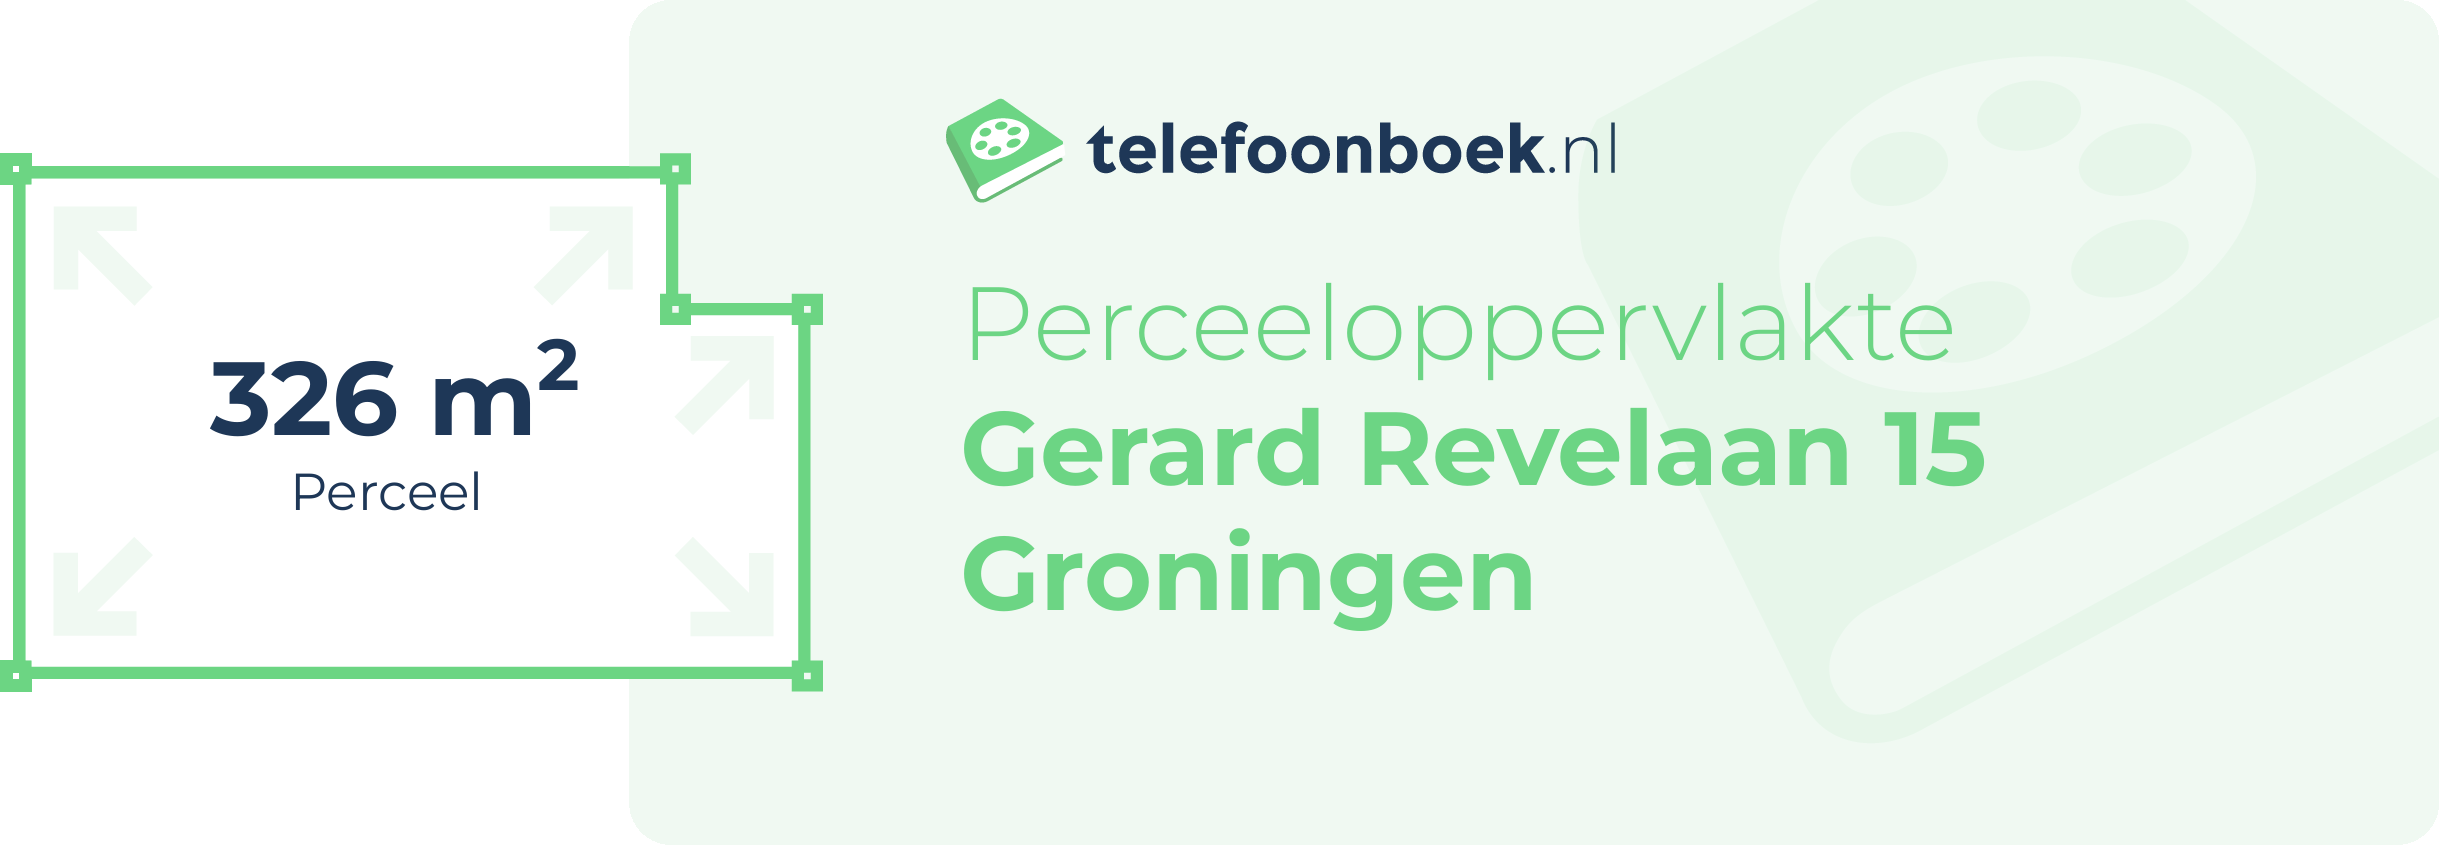 Perceeloppervlakte Gerard Revelaan 15 Groningen